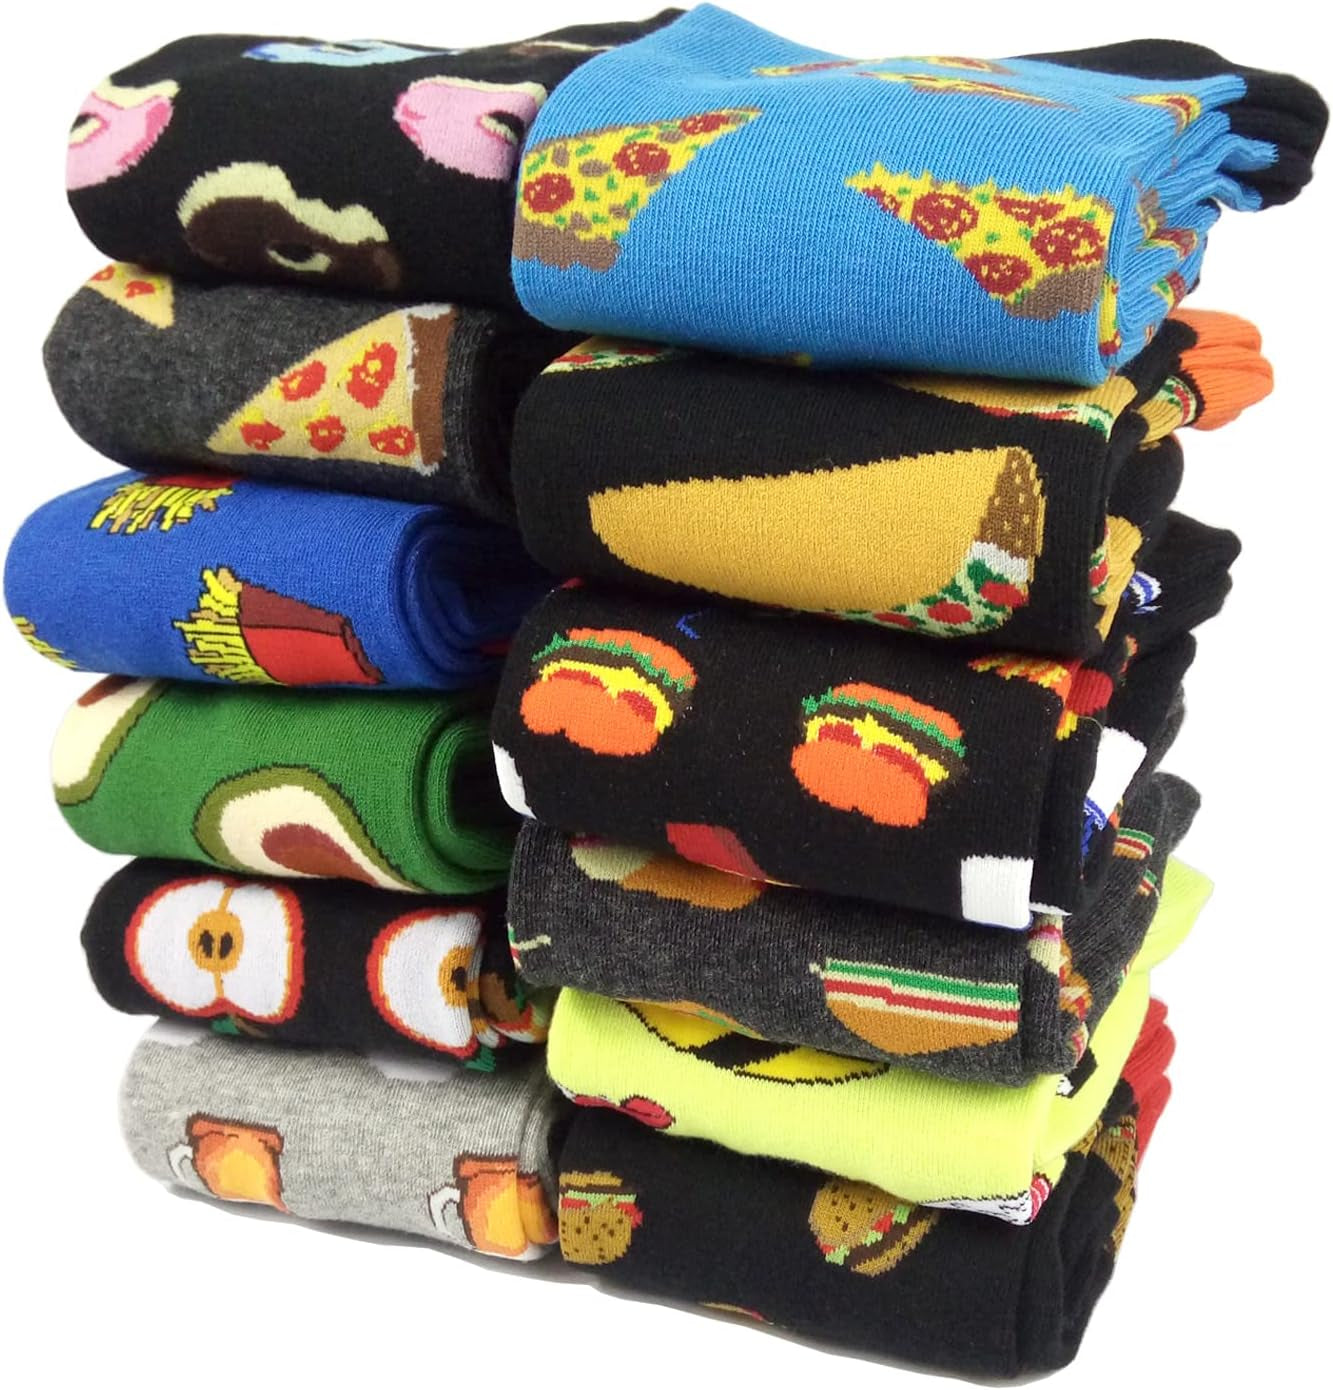 Mens Funny Pattern Dress Socks Crazy Design Cotton Socks Novelty Gifts for Men